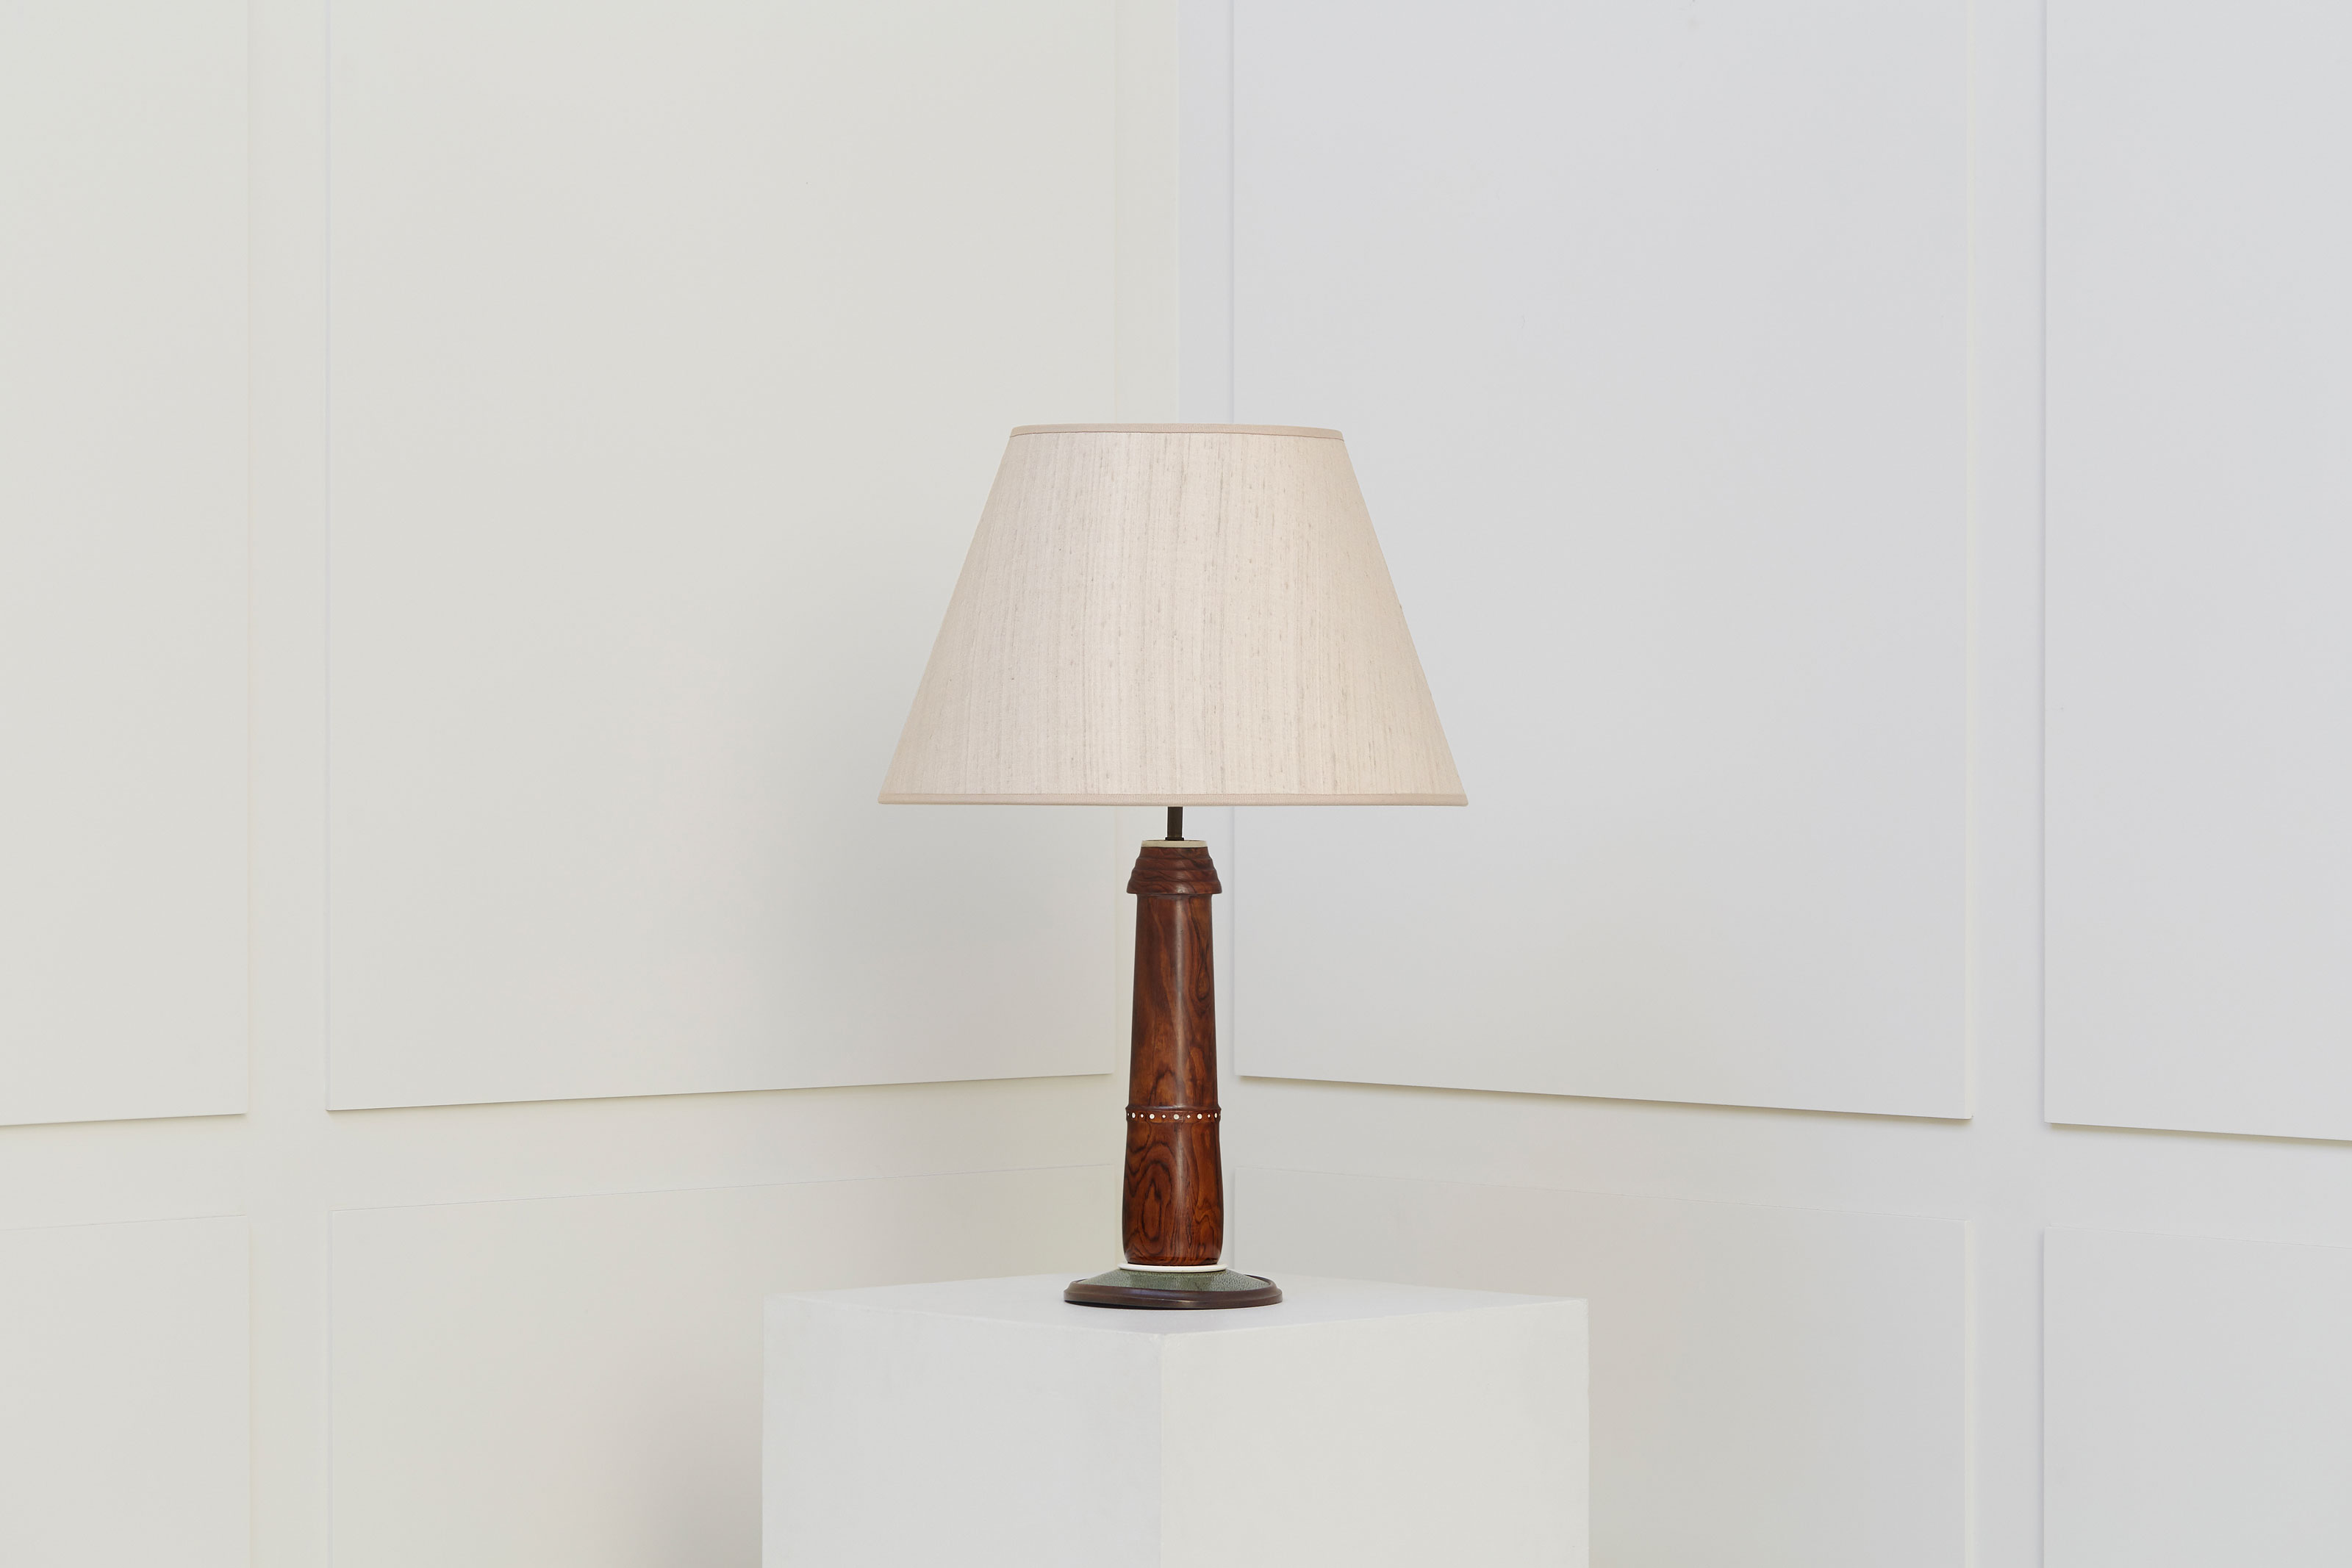 Clément Rousseau, Rare lampe, vue 01